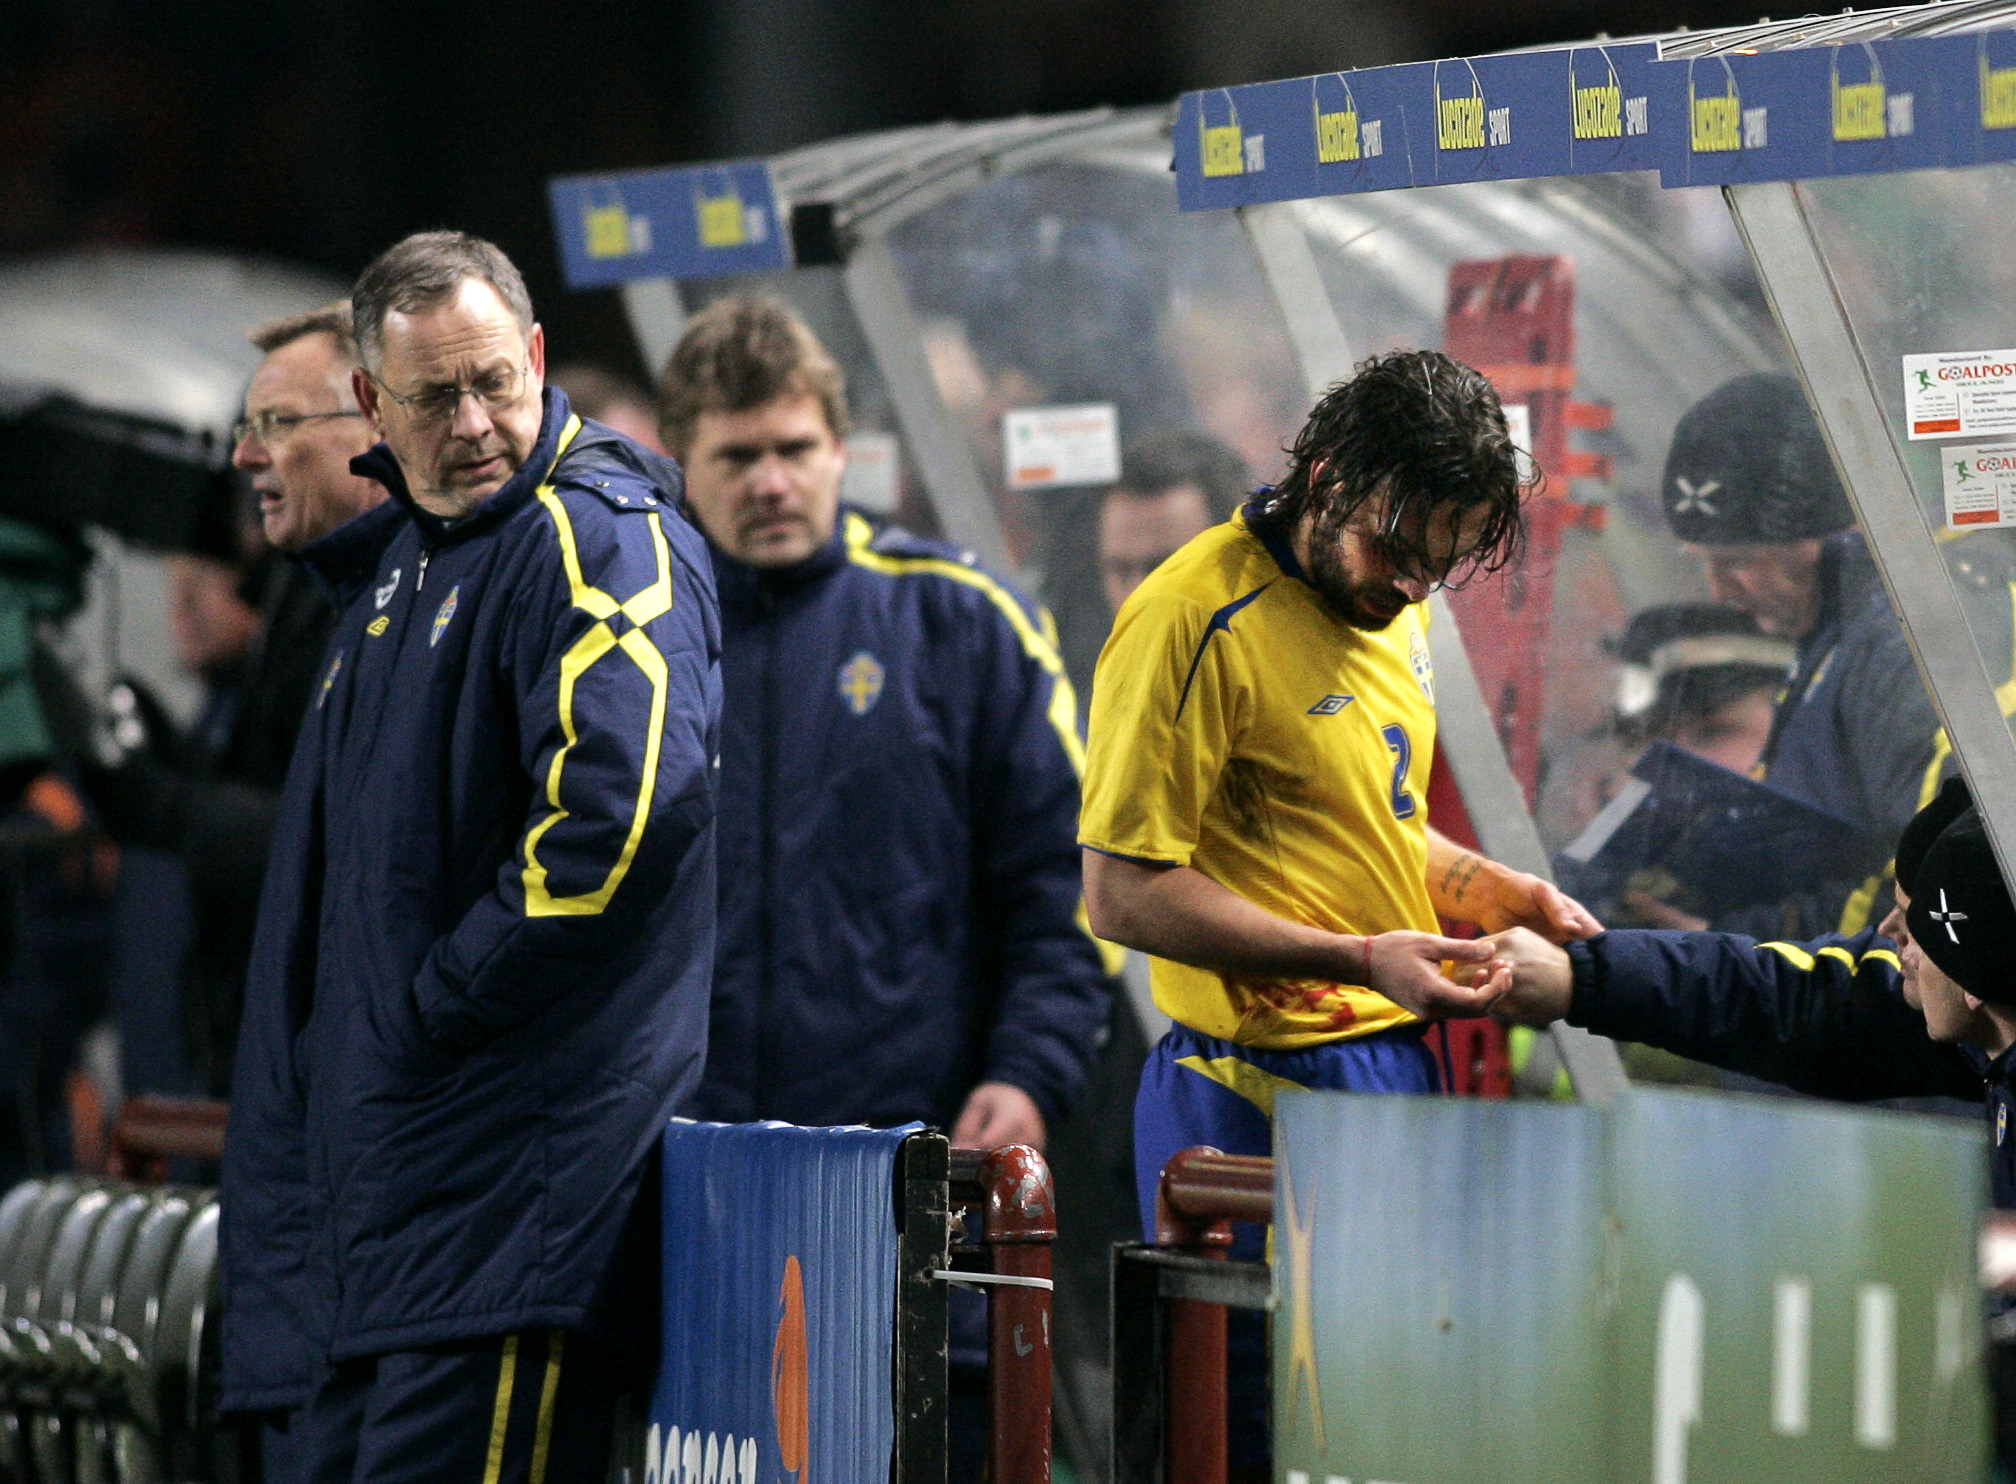 Men när Sverige mötte Irland i februari 2006 hade Östlund en av sina sämre dagar på fotbollsplanen. Att en spelare som Damien Duff hade lekstuga mot den svenska högerbacken ger med all önskvärd tydlighet en bild om hur fasansfullt usel Östlund var den mat